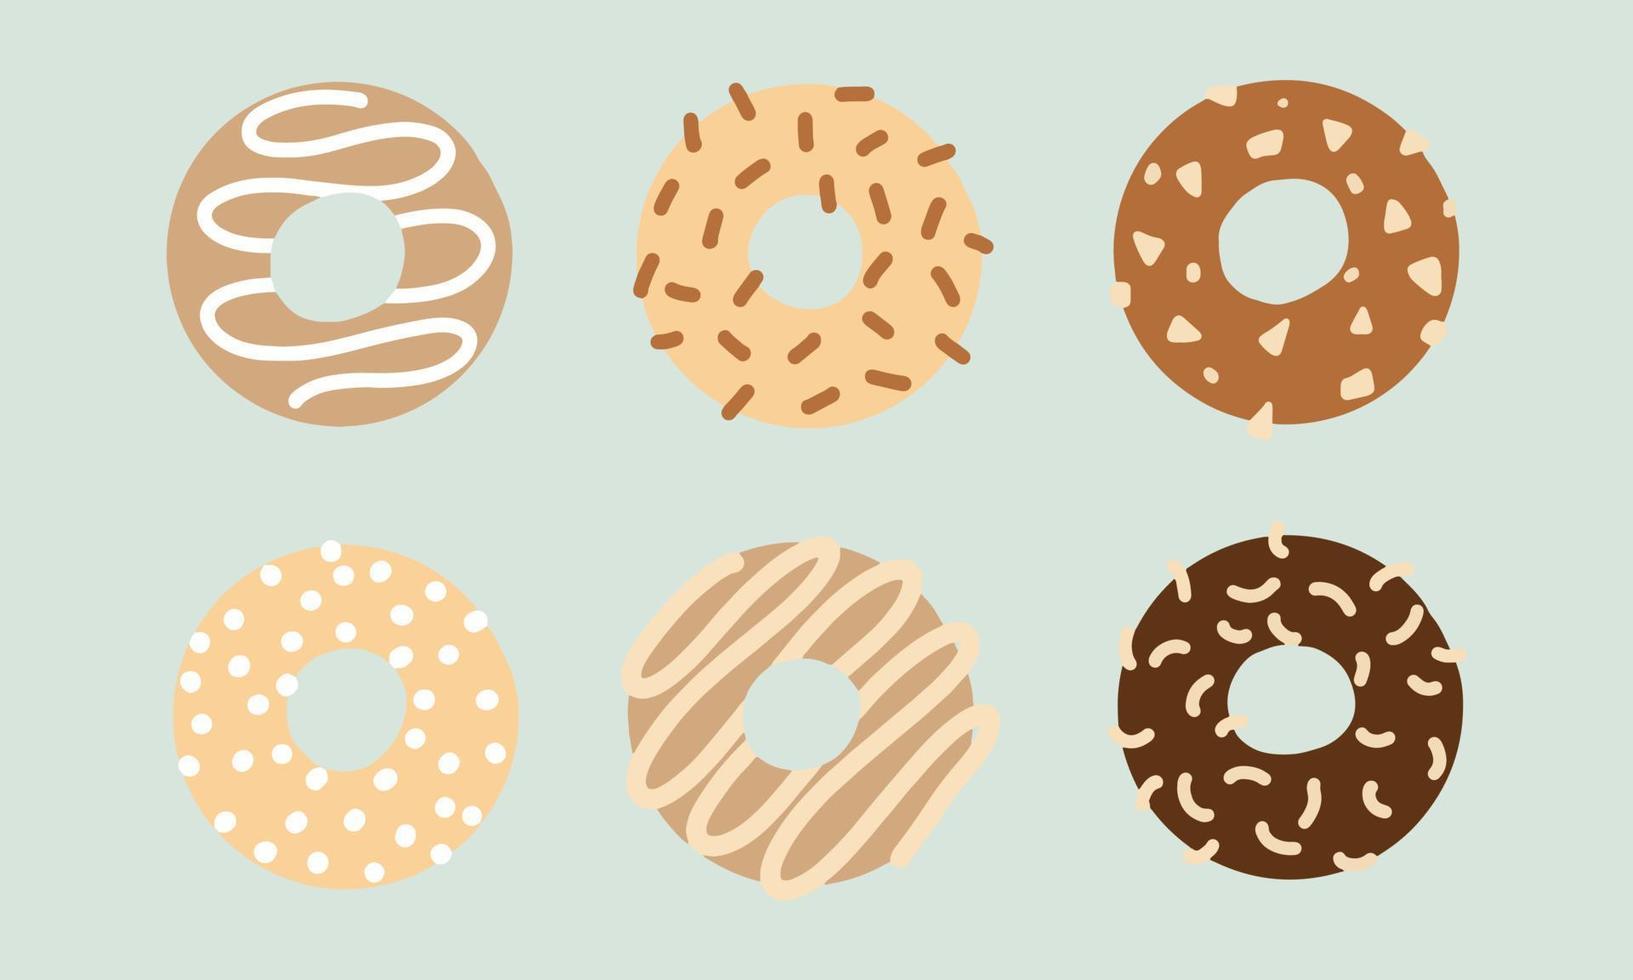 ilustraciones de diseño plano de donuts con varios ingredientes. vector